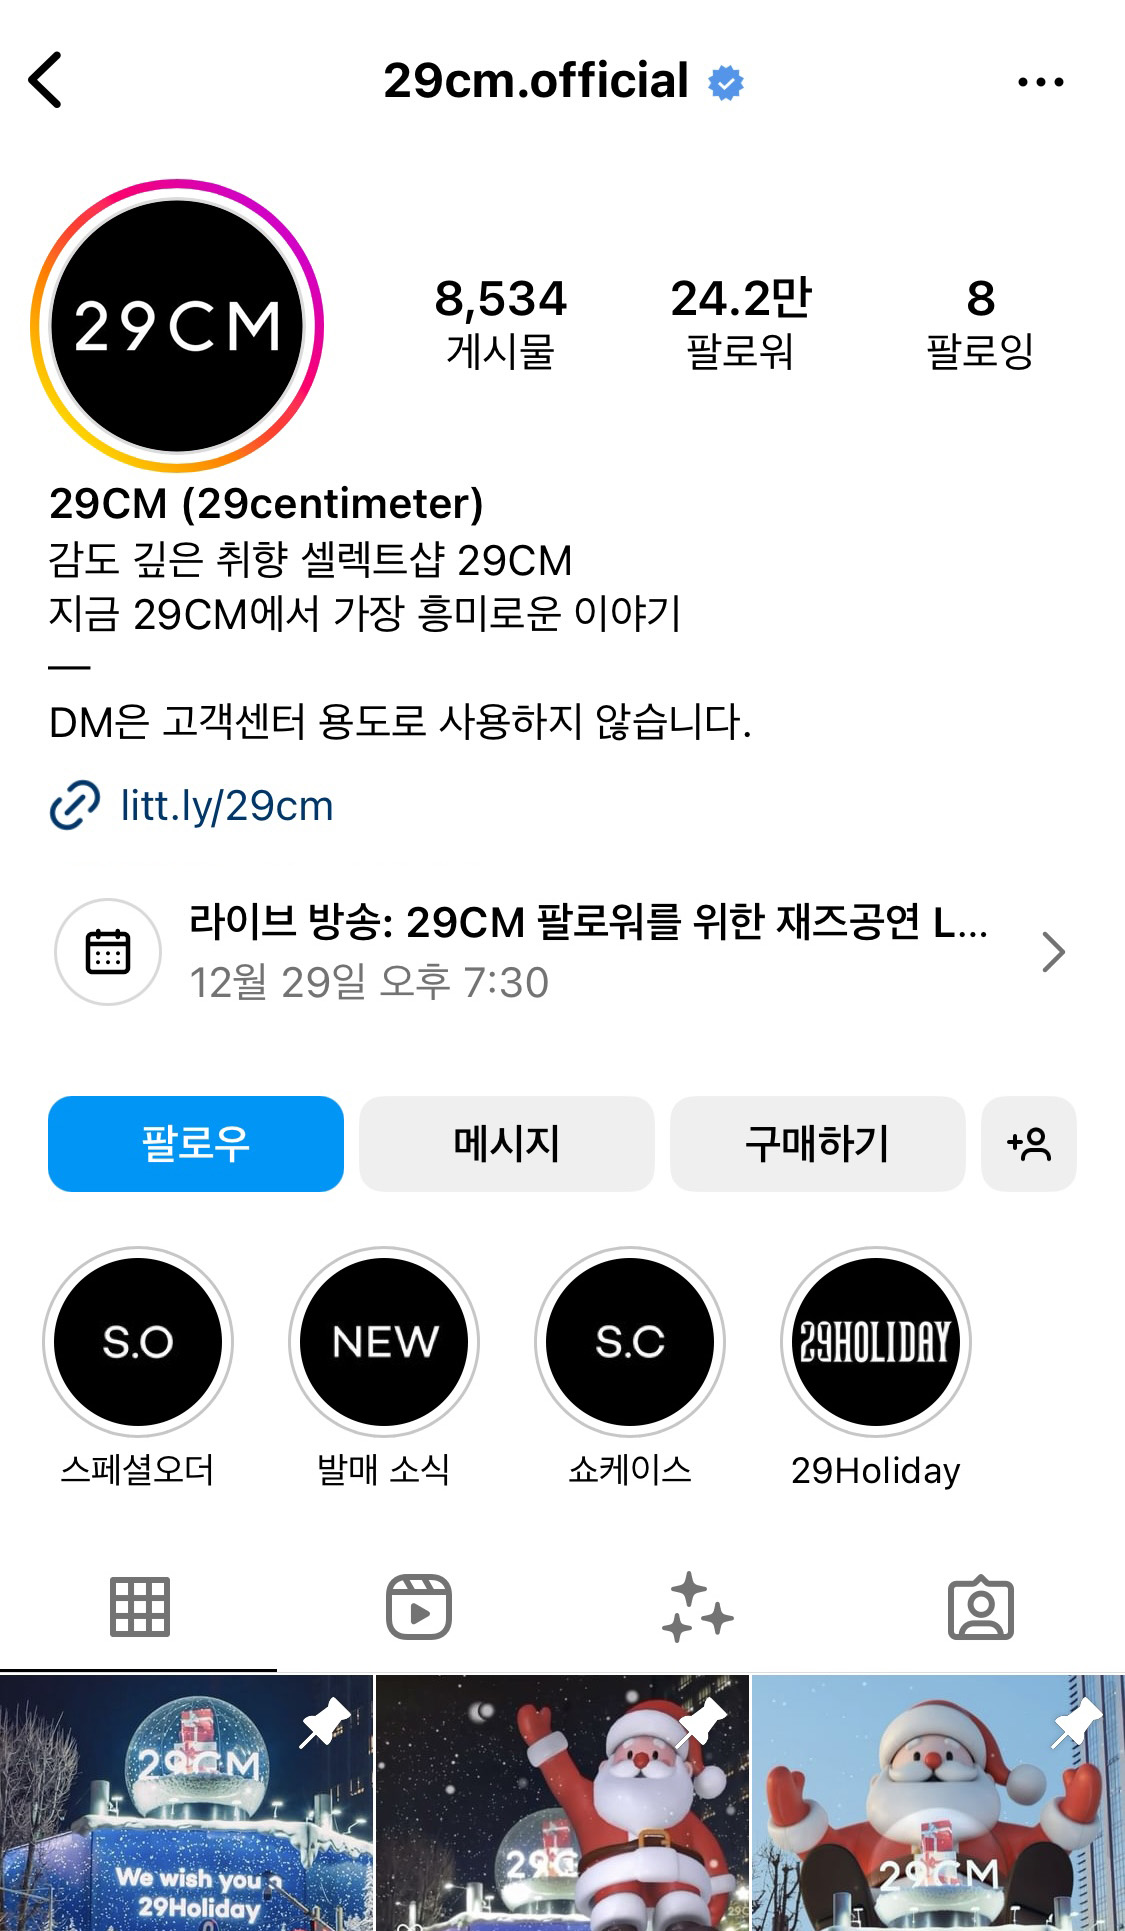 인스타그램 잘하는 브랜드 29cm의 인스타그램 공식 계정